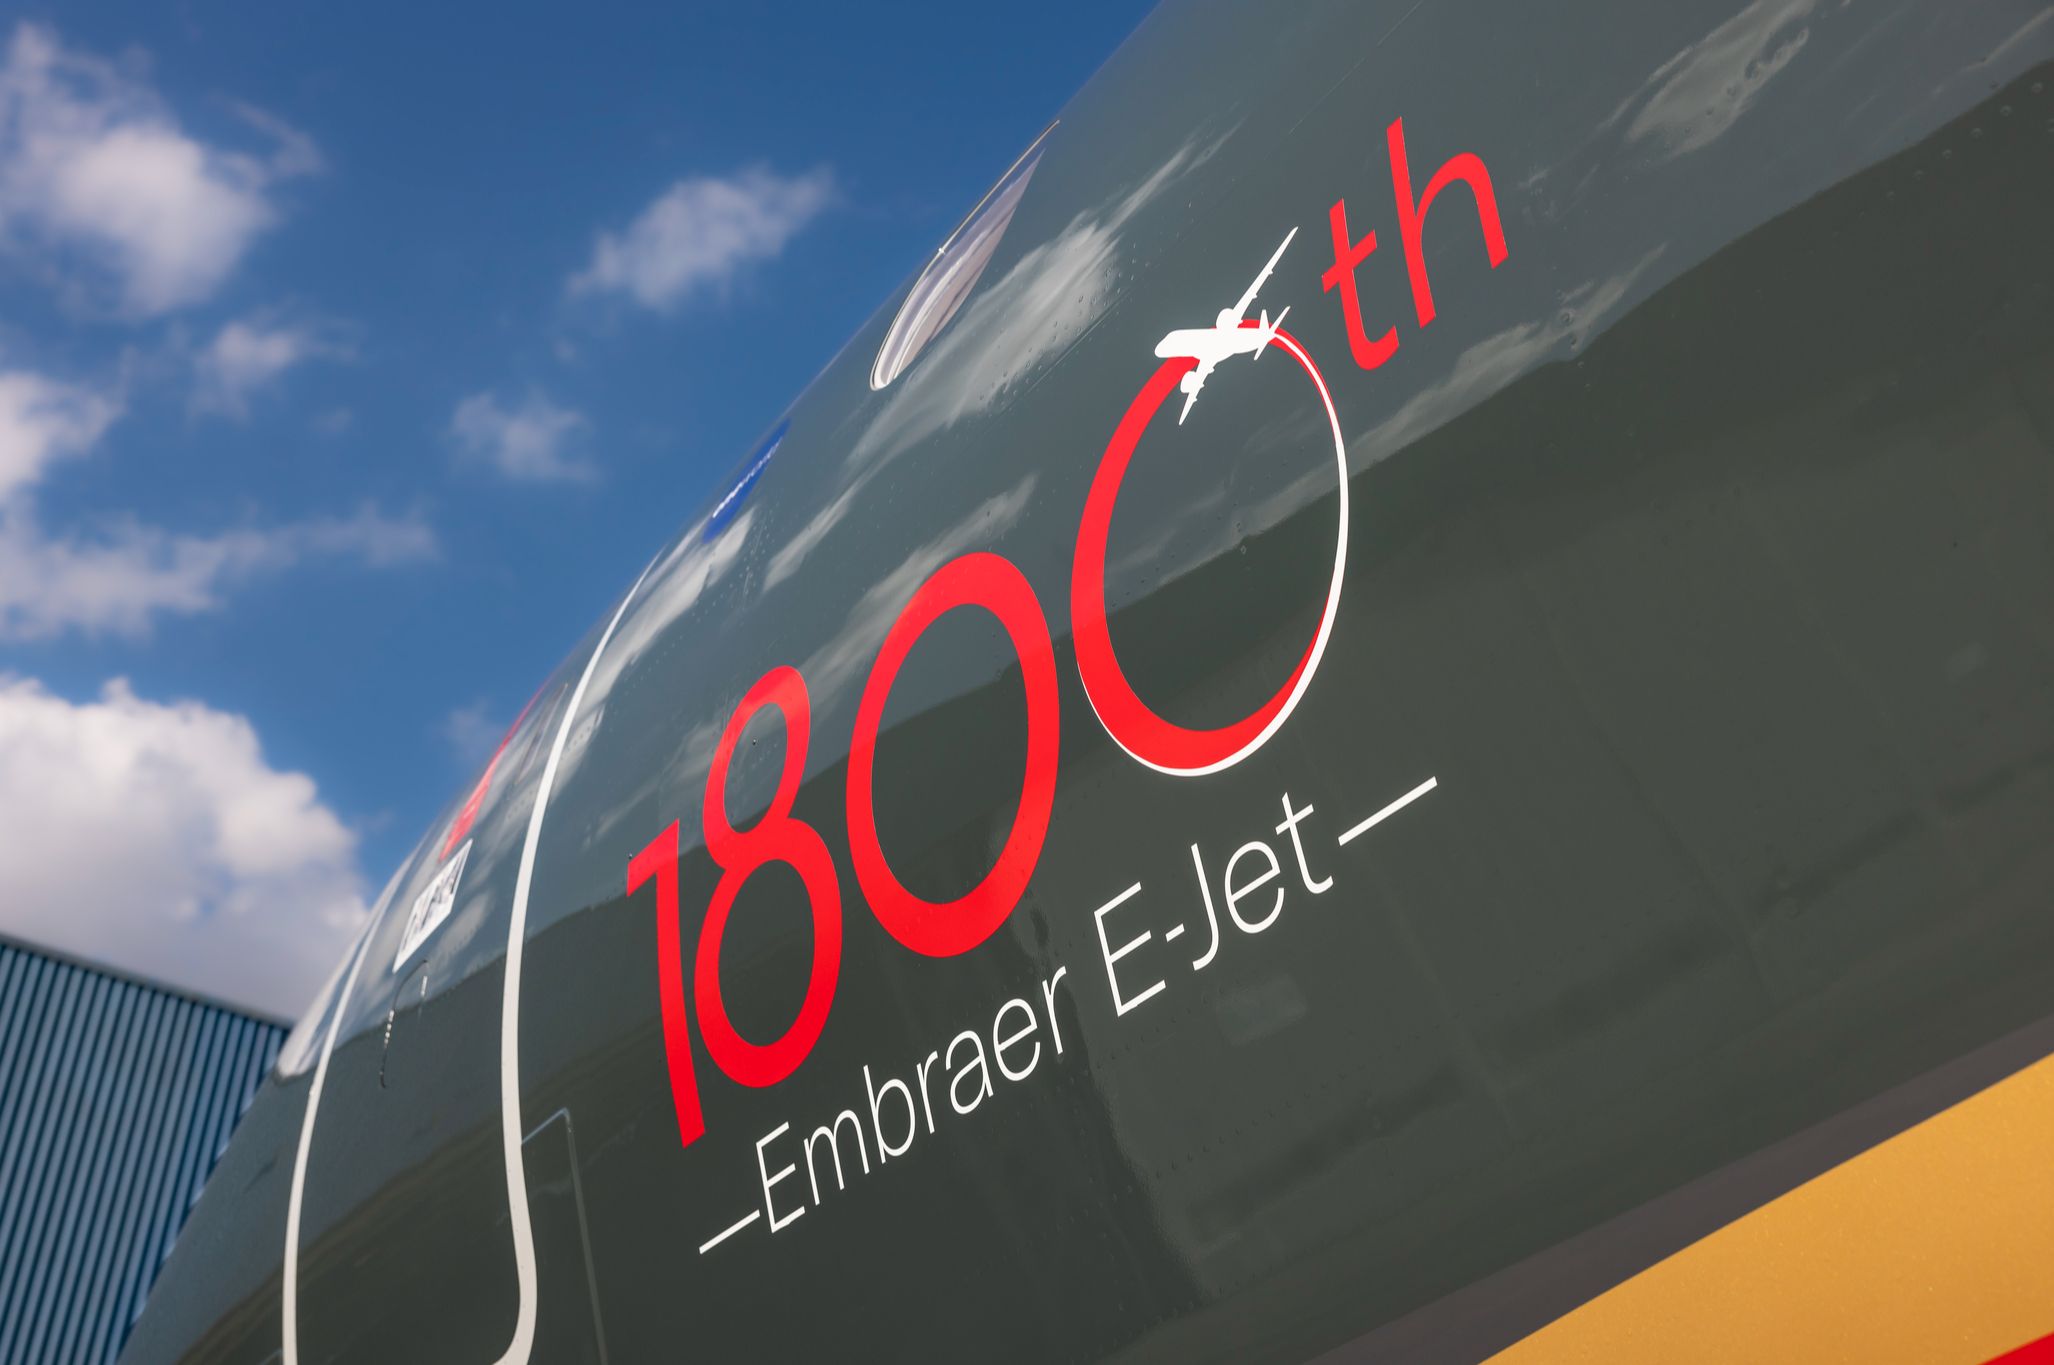 巴航工业交付第1800架E系列喷气飞机